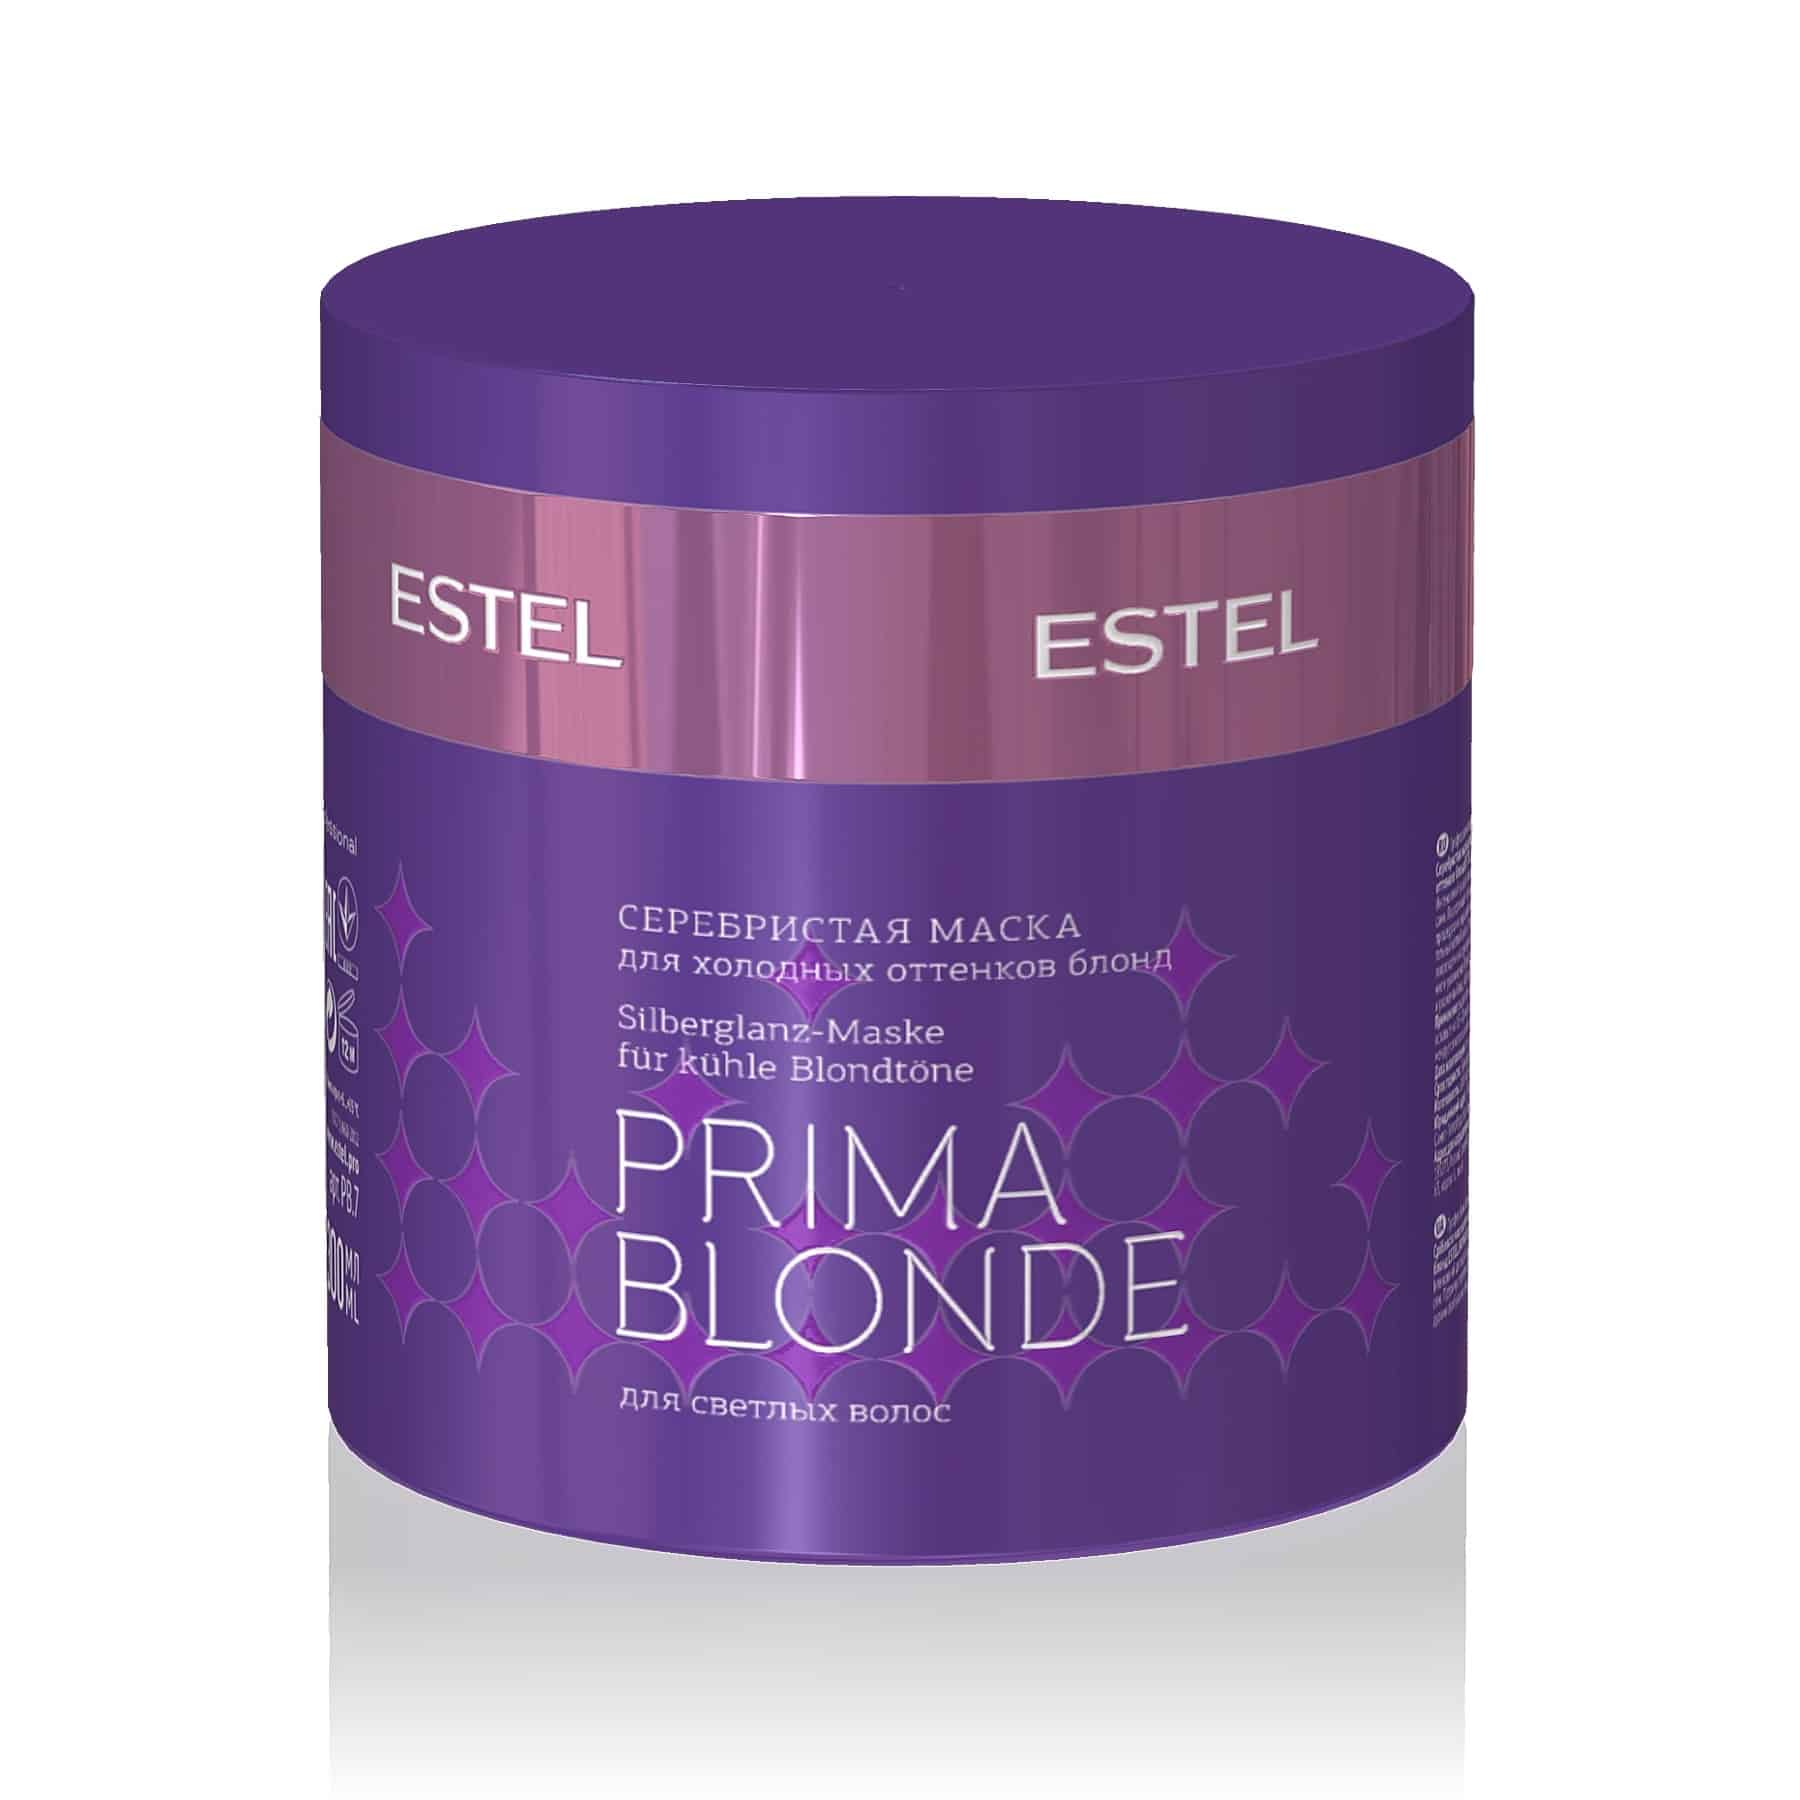 PRIMA BLONDE Silberglanz-Maske für kühle Blondtöne von ESTEL